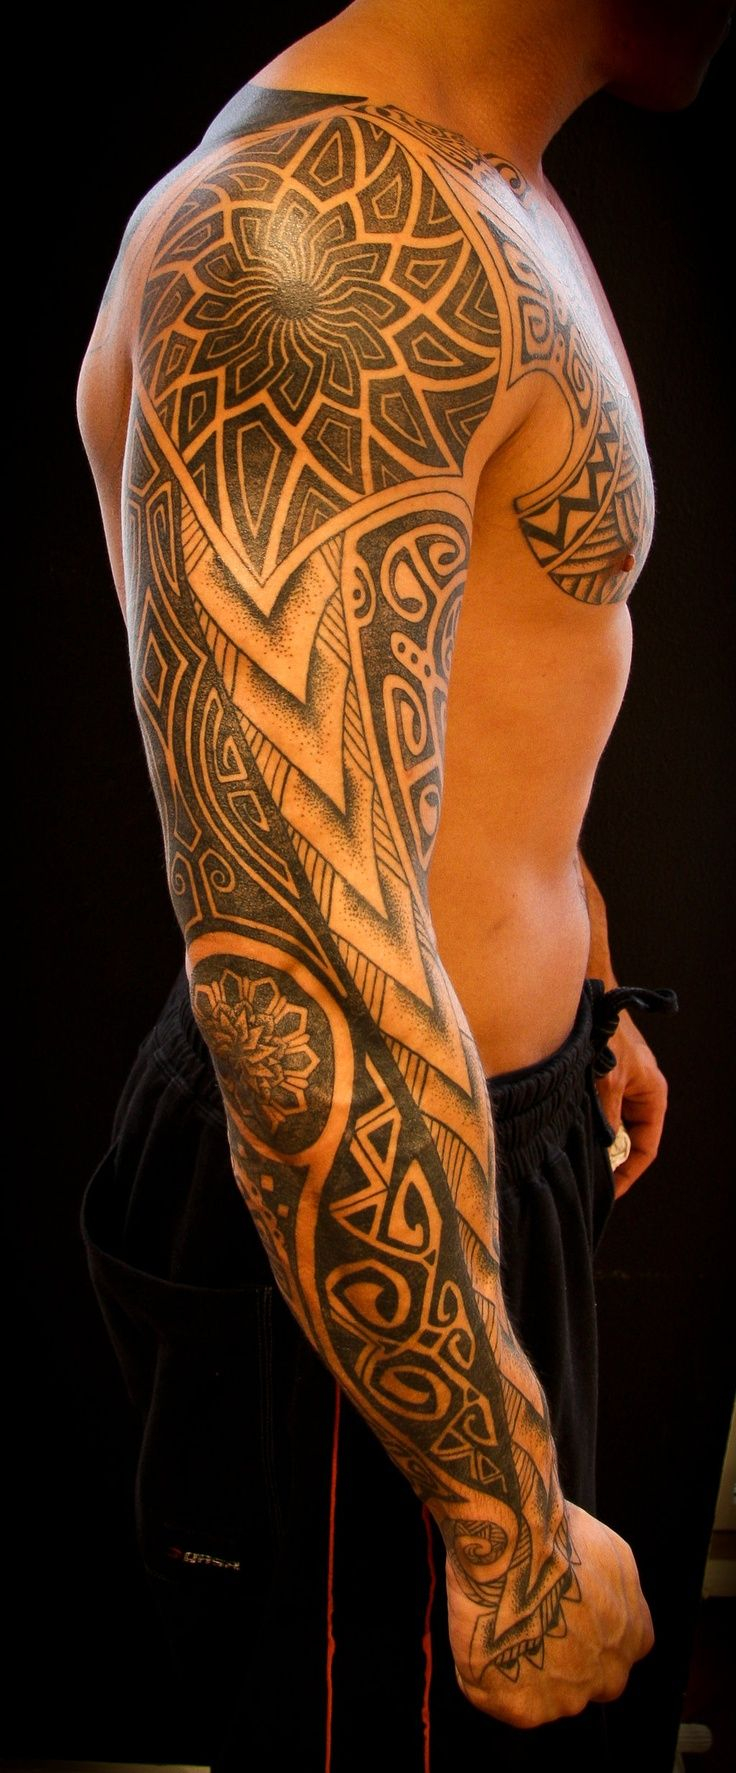 Man arm tattoo Arm Tattoos